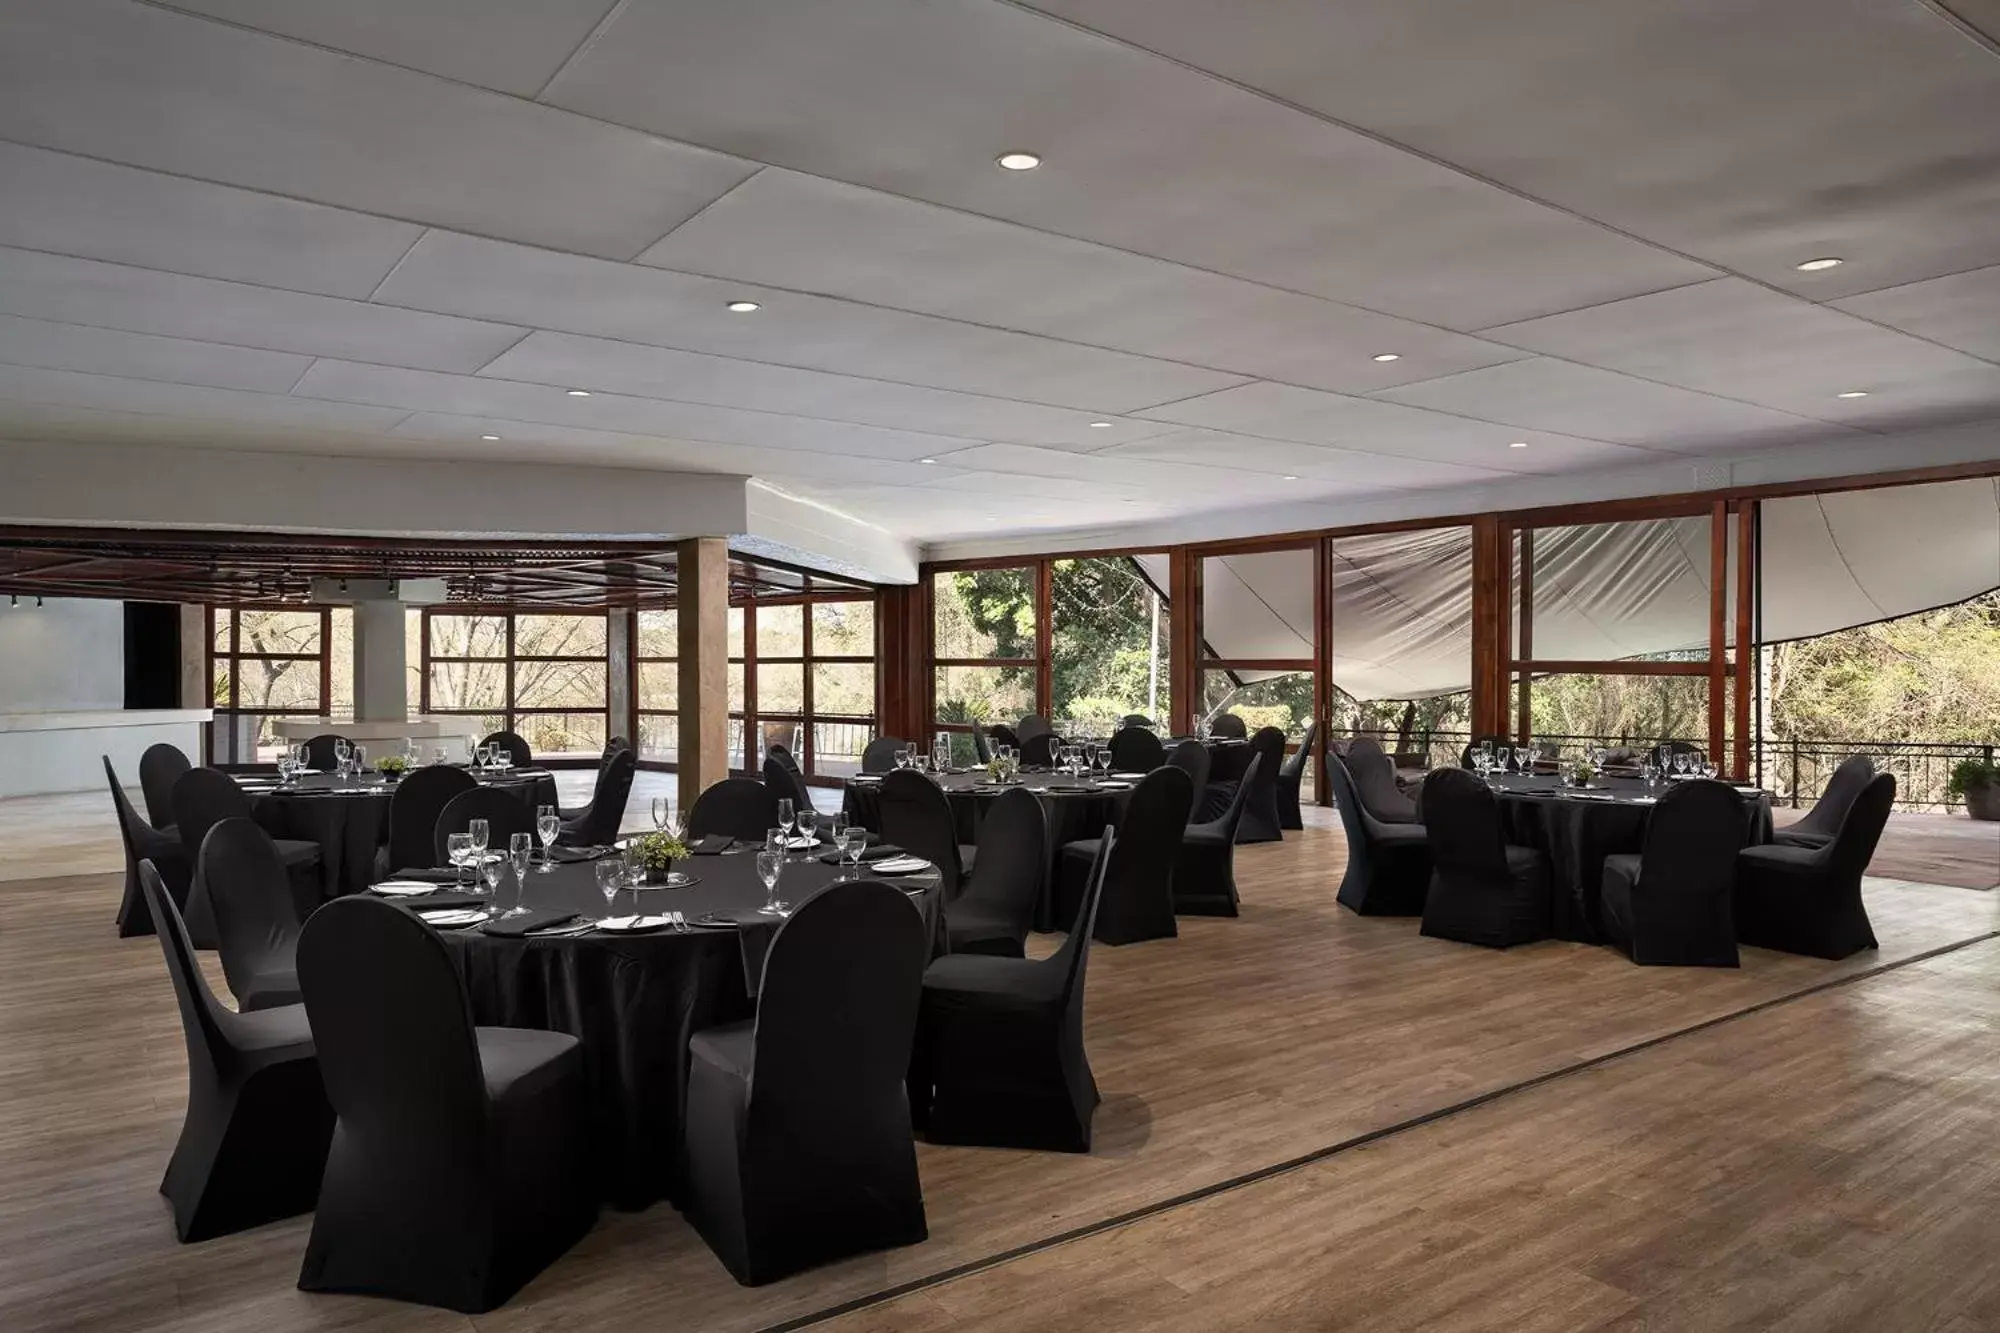 Banquet/Function facilities, Banquet Facilities in Premier Hotel Roodevalley